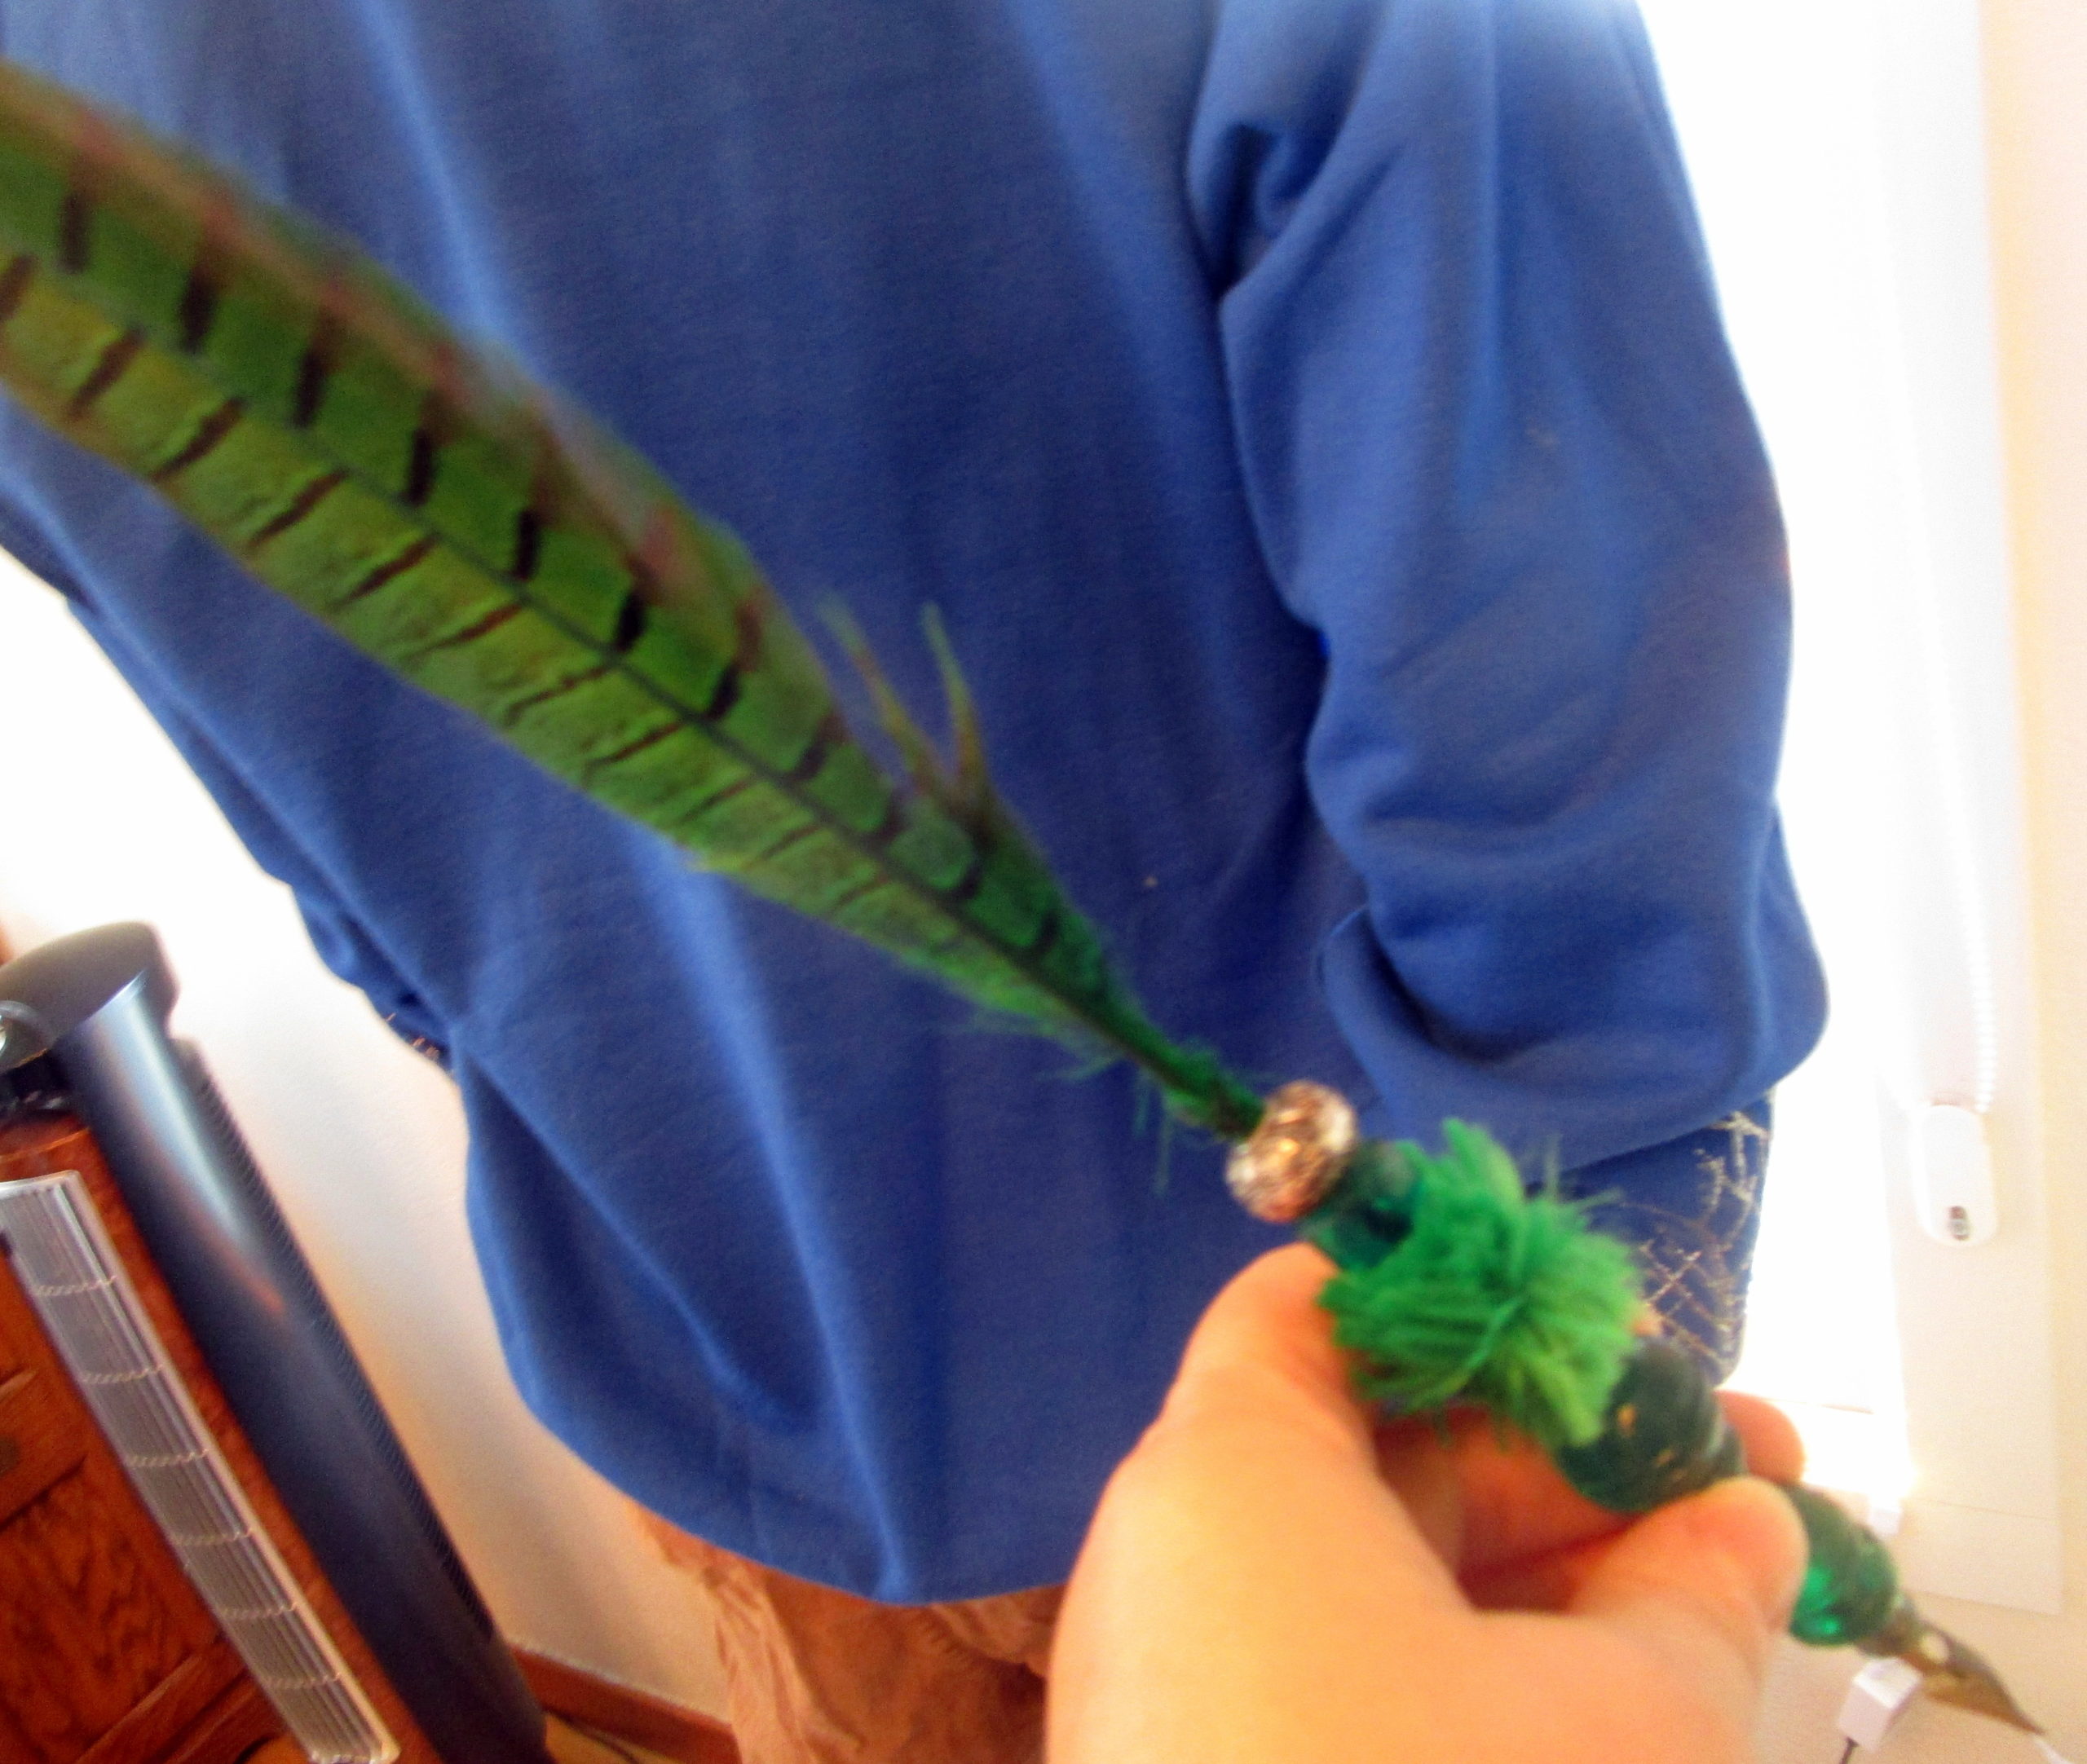 Green Turkey Feather Quill Pen – Objets d'Art & Spirit